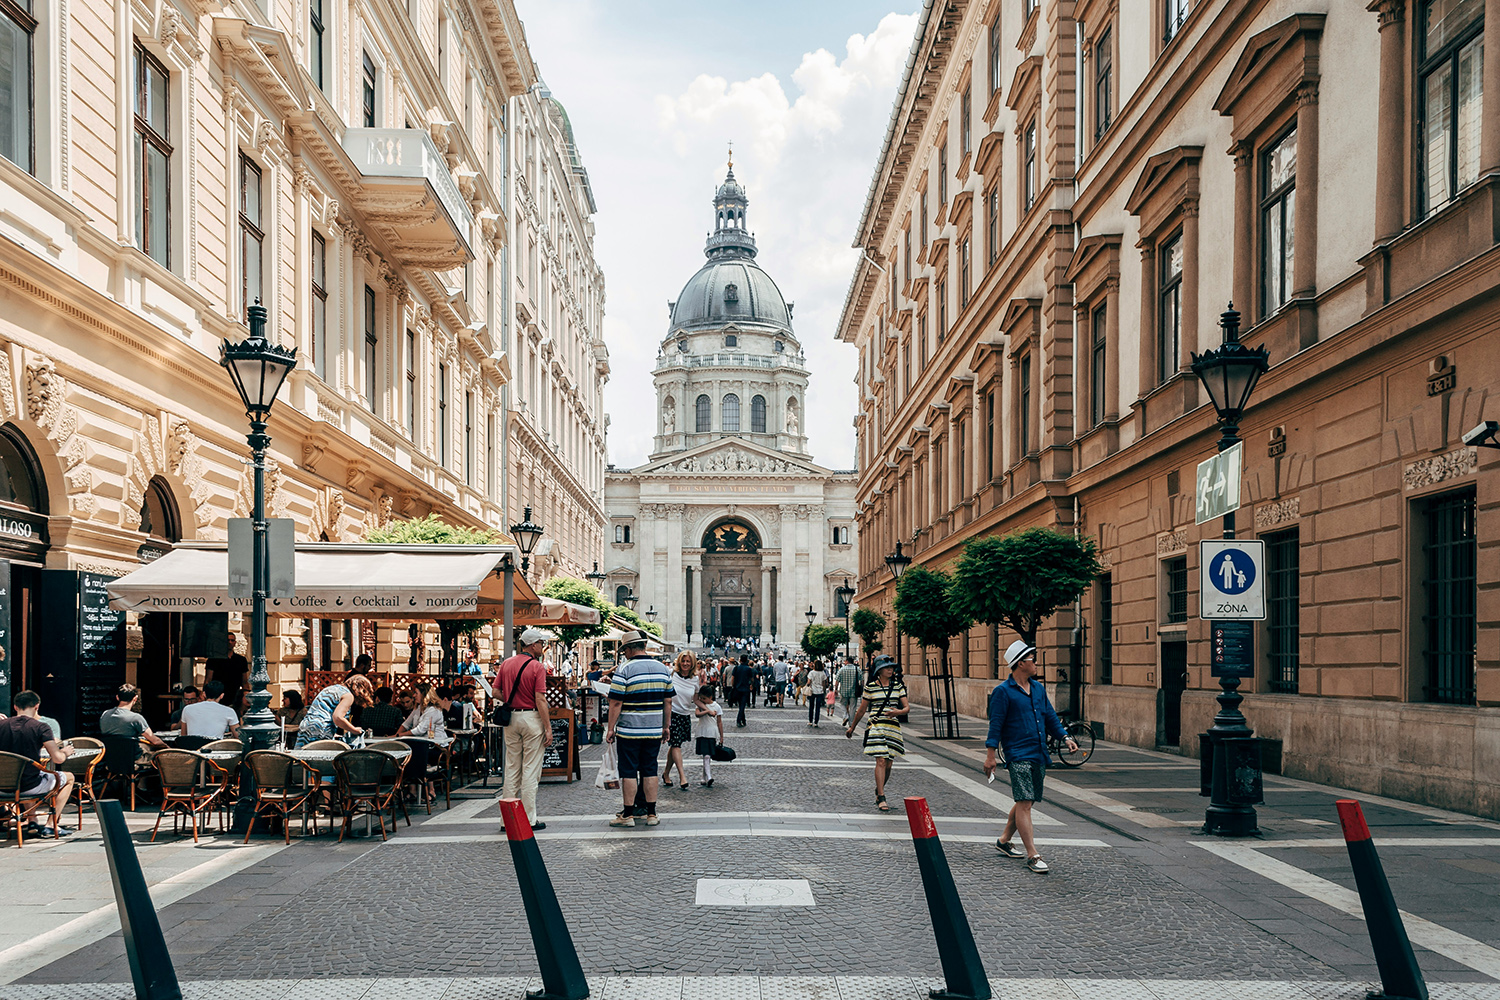 Dù bạn tham quan kiến trúc Baroque hay những con phố đi bộ sầm uất, thì thủ đô của Hungary đều thích hợp cho việc khám phá bằng cách đi bộ. (Ảnh: Ljubomir Žarković/Unsplash)